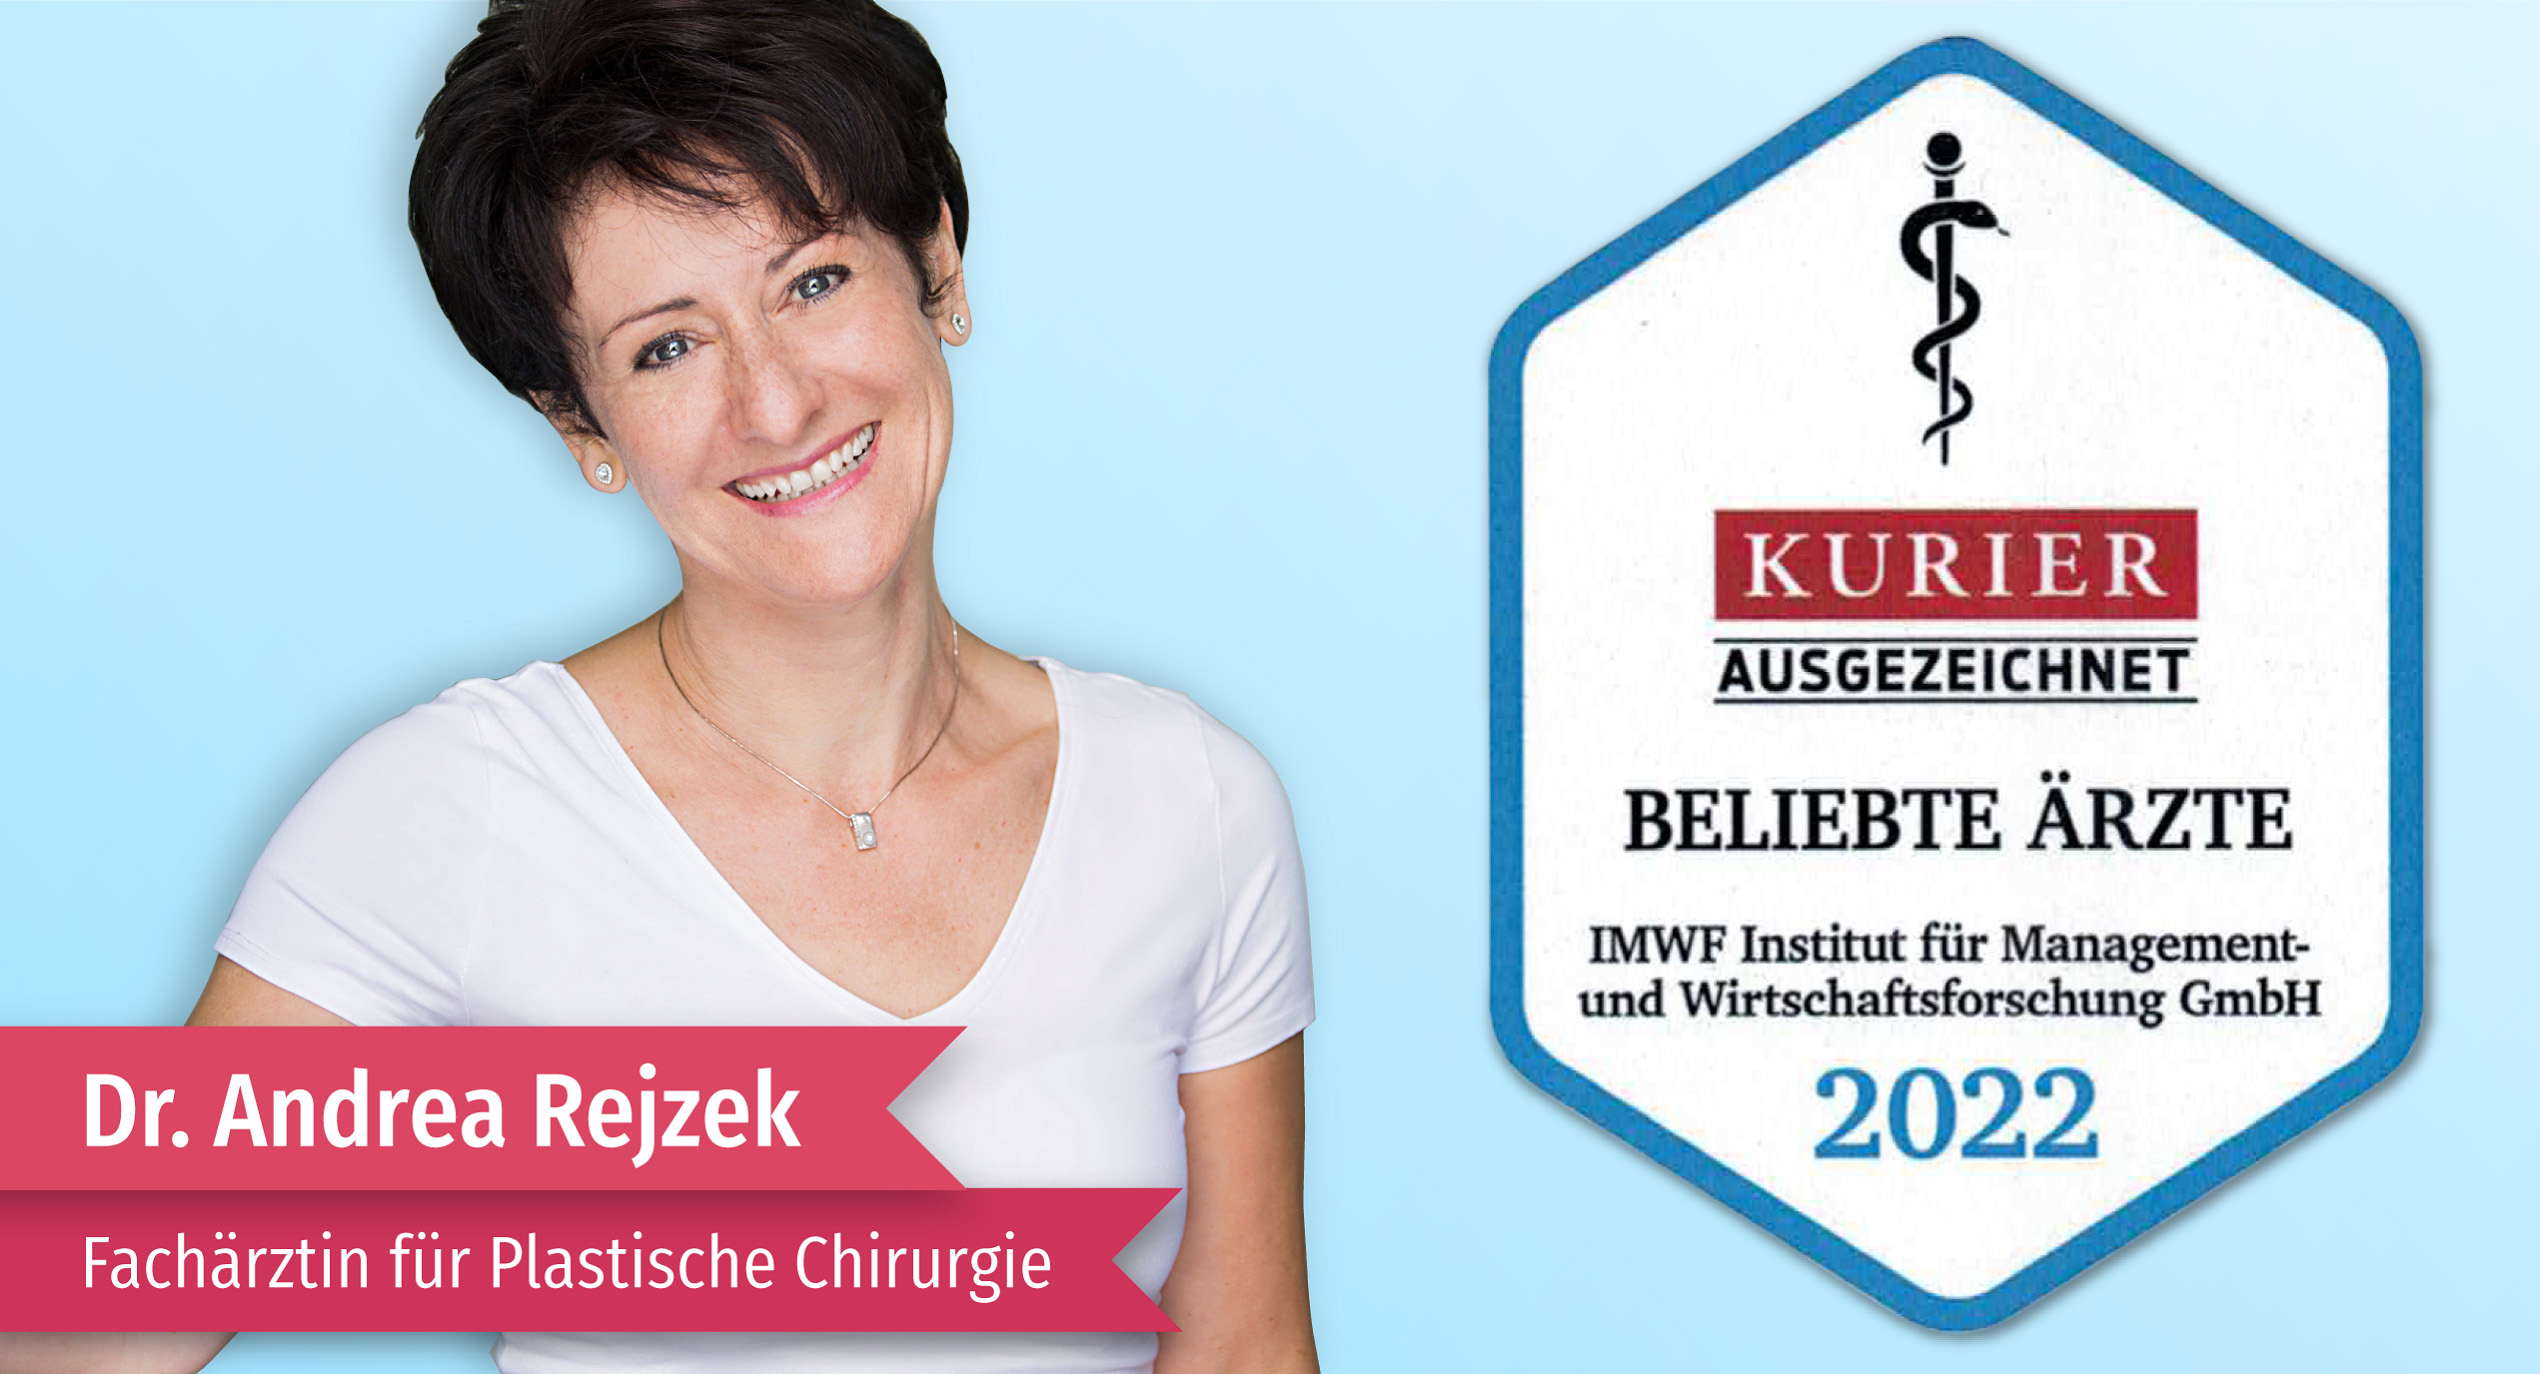 Frau Dr. Andrea Rejzek, Fachärztin für Plastische Chirurgie wurde Mit dem Gütesiegel ausgezeichnet 2022